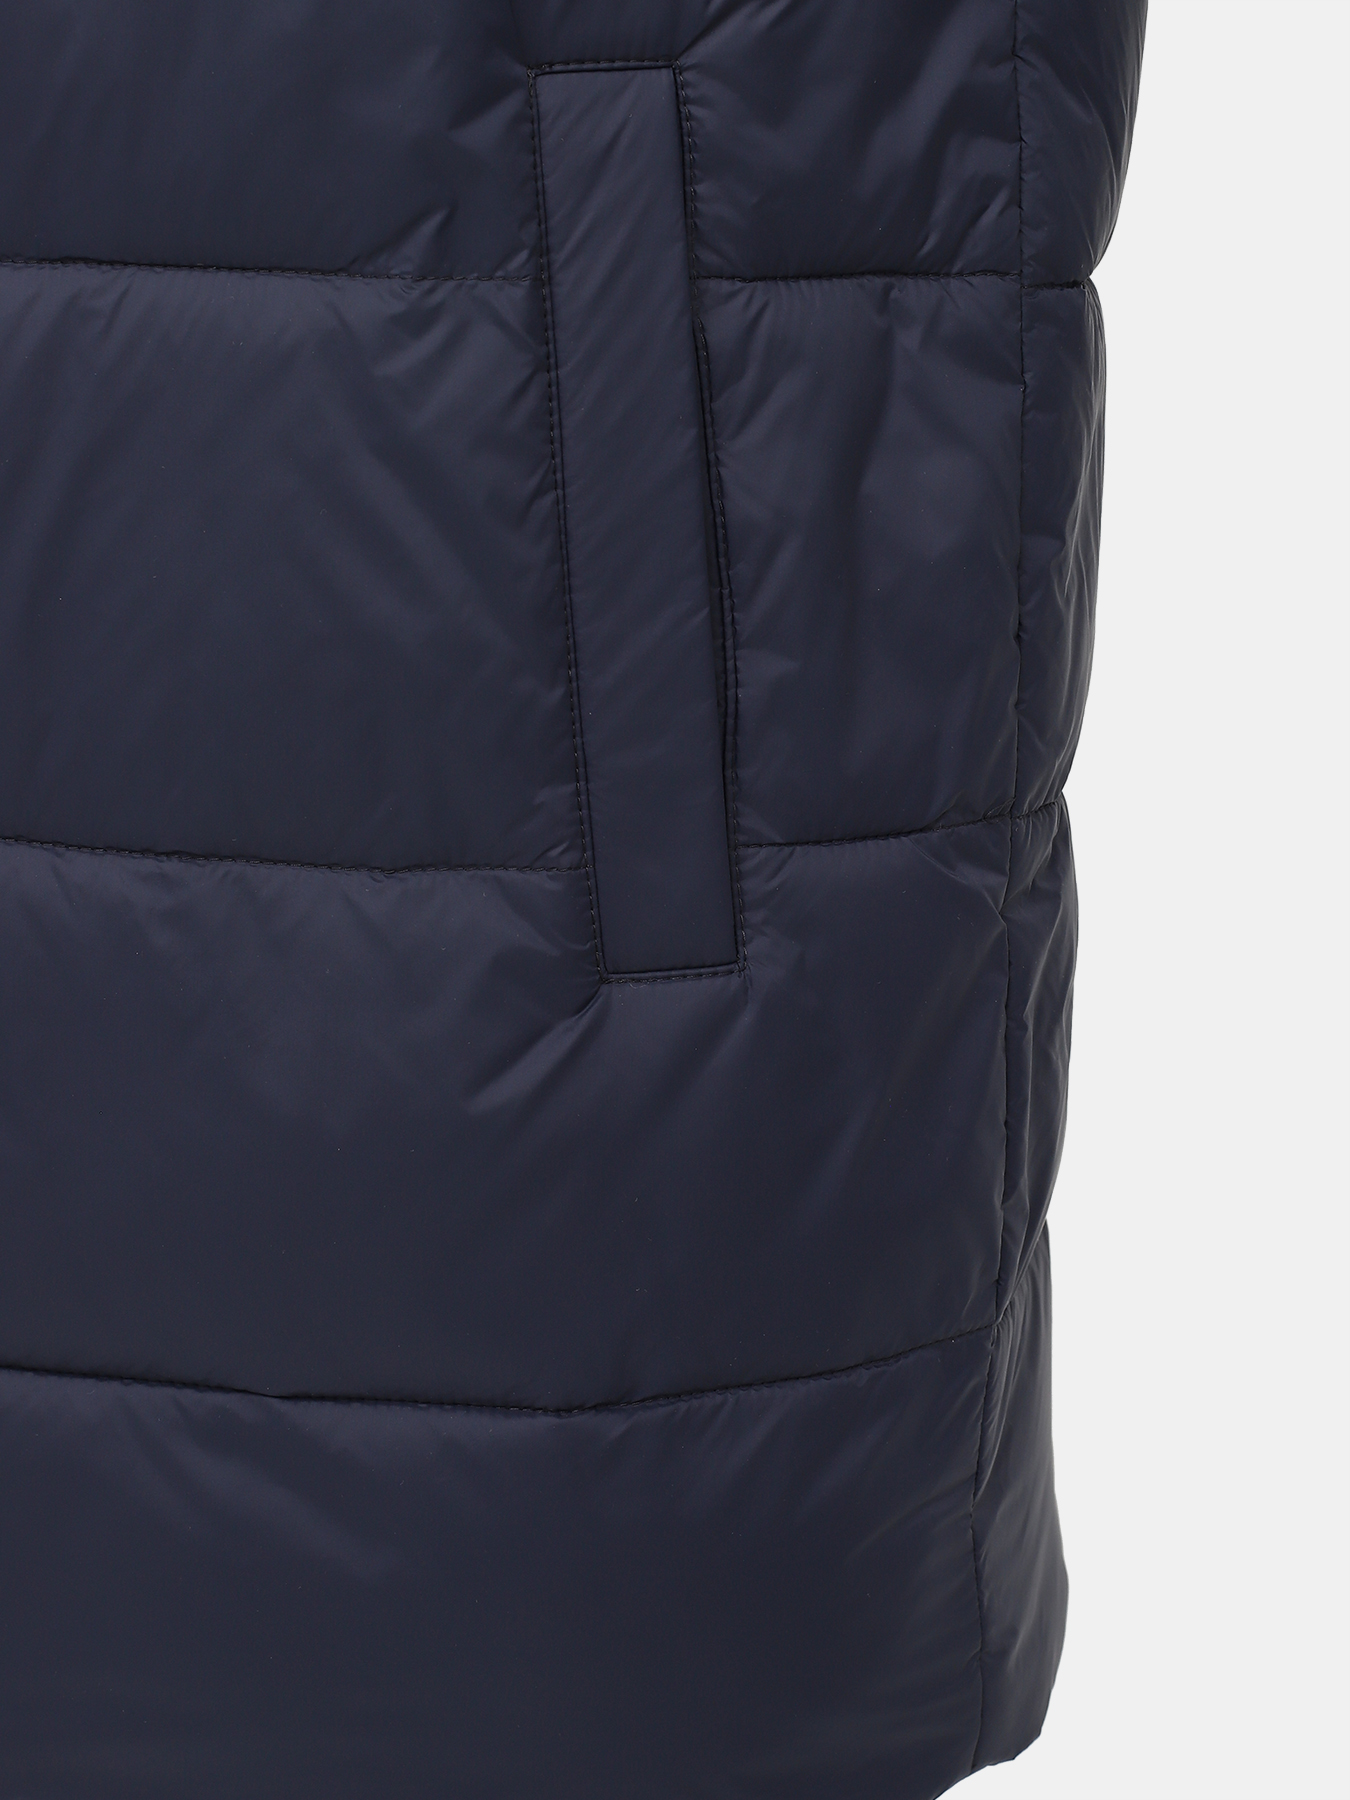 Удлиненная куртка Mati HUGO 426056-045, цвет темно-синий, размер 52-54 - фото 4